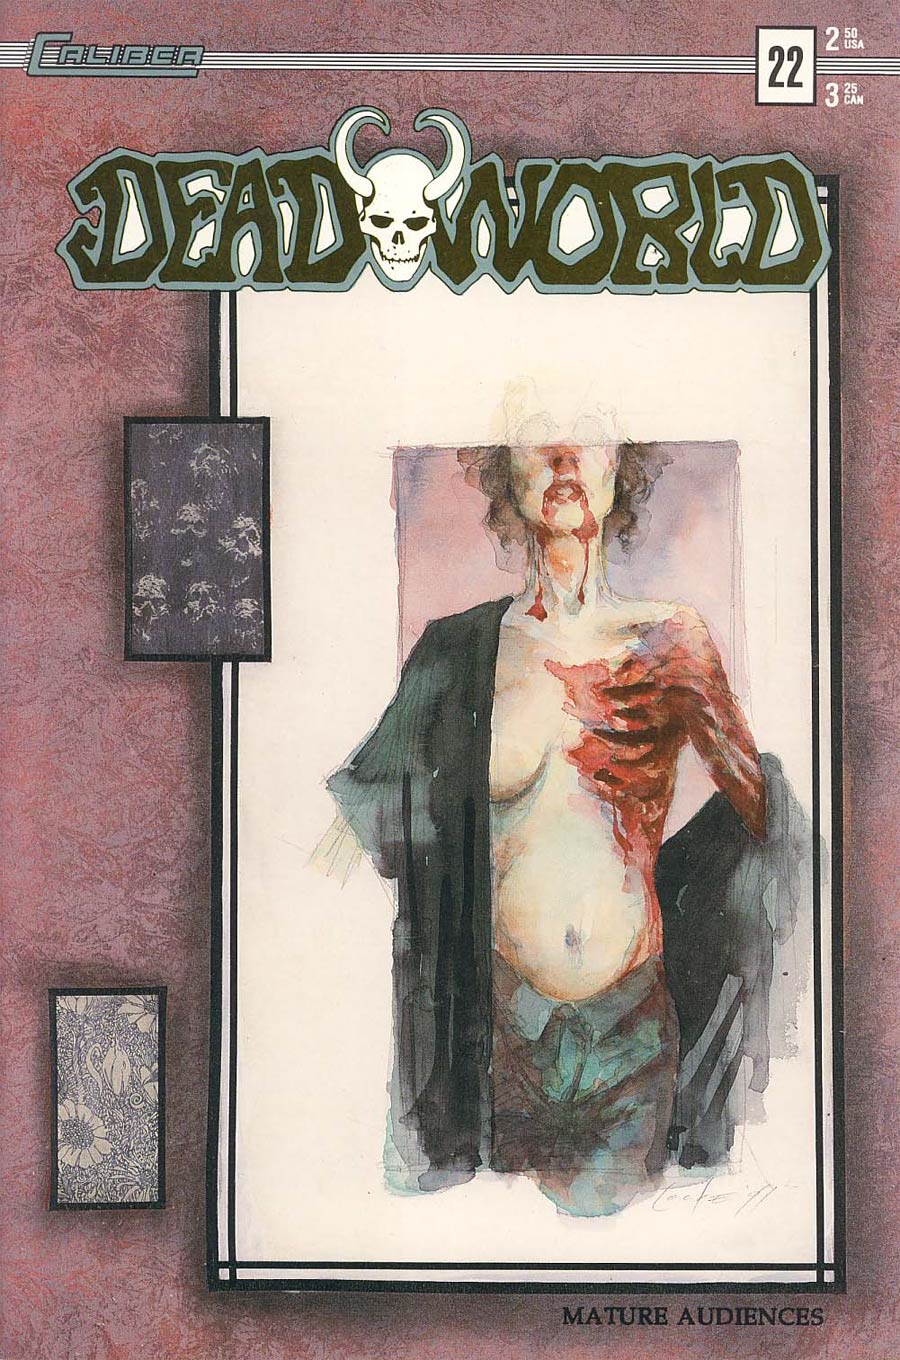 Deadworld #22 Graphic Cover